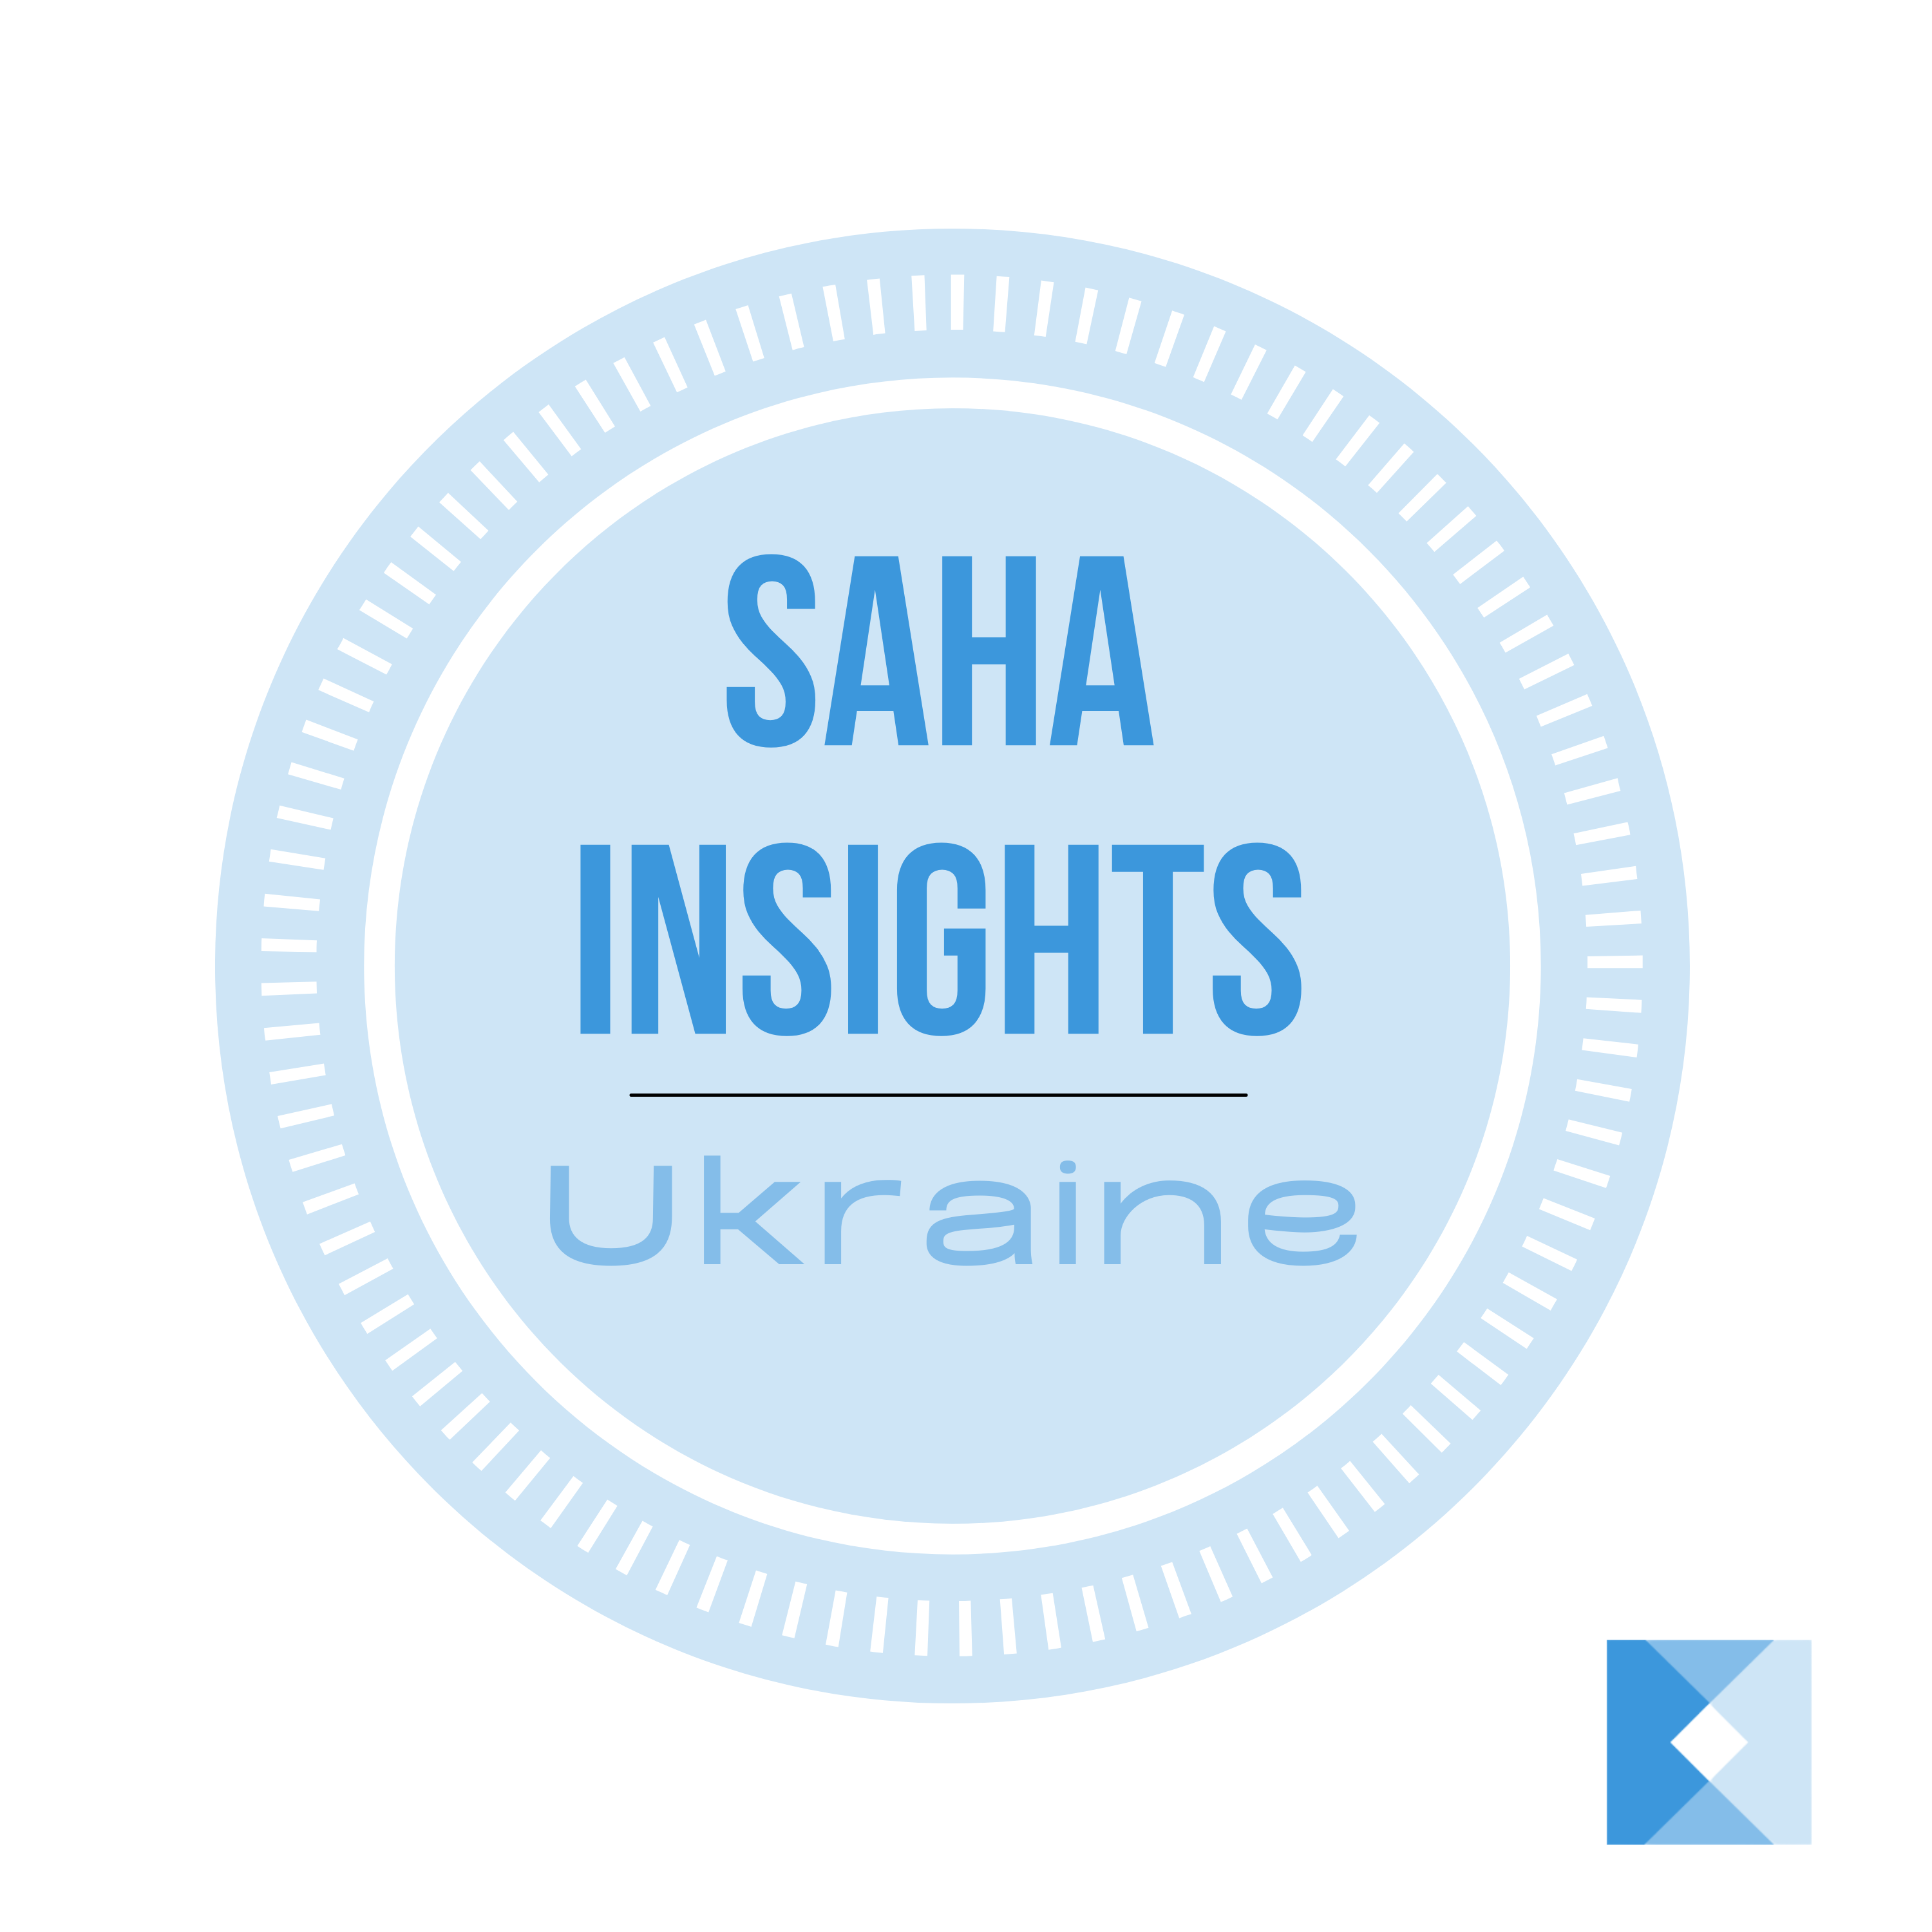 SAHA Insights: Ukraine